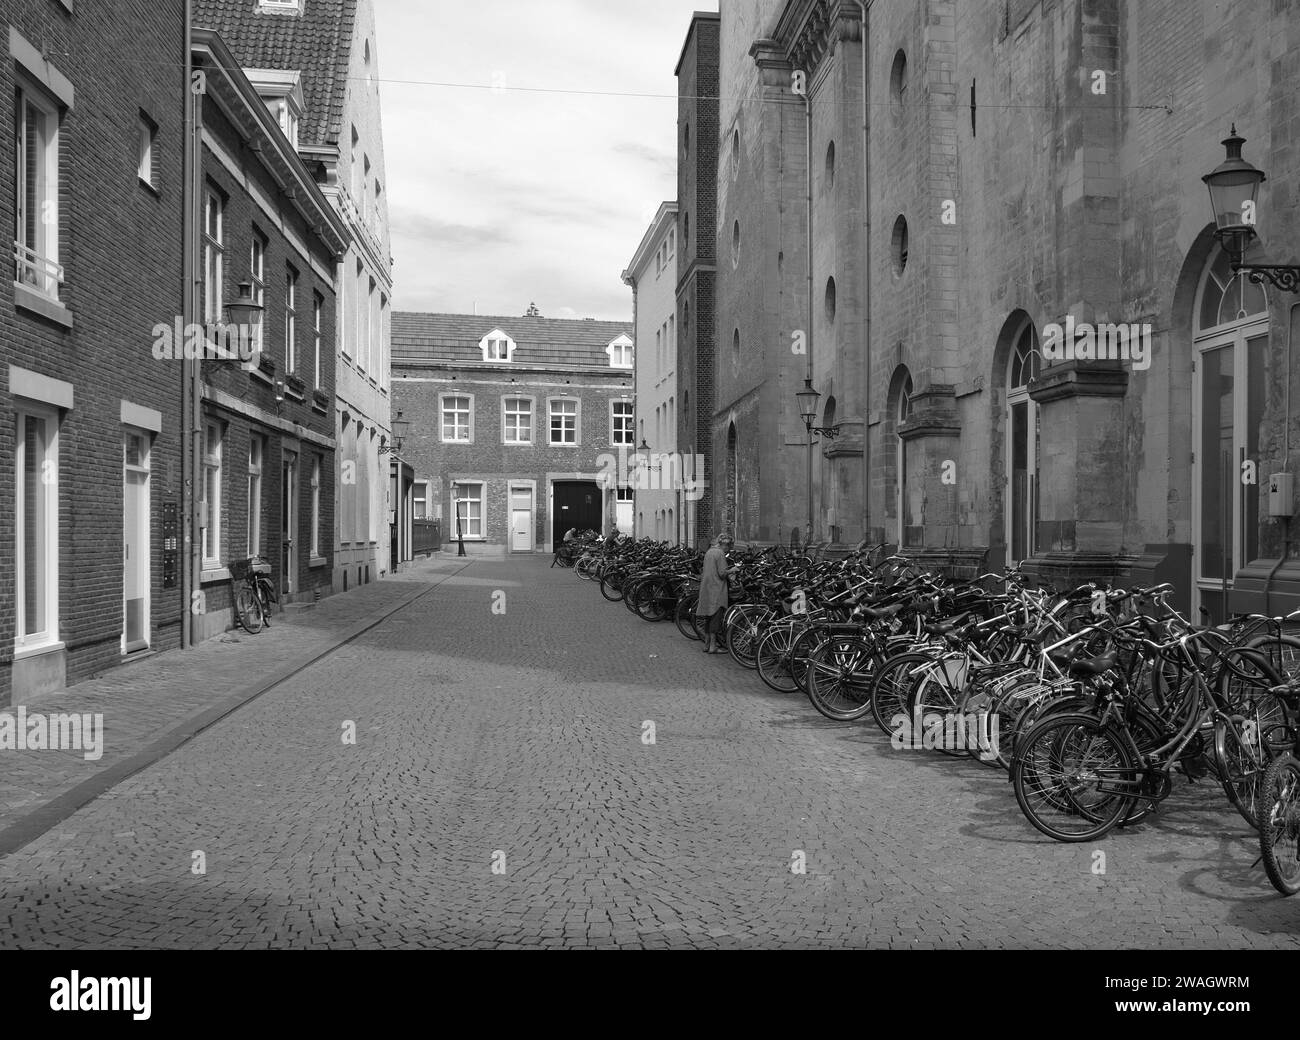 Maastricht, il centro città dei Paesi Bassi con vecchi edifici storici, negozi, negozi con biciclette parcheggiate in fila su una strada acciottolata in B&W. Foto Stock